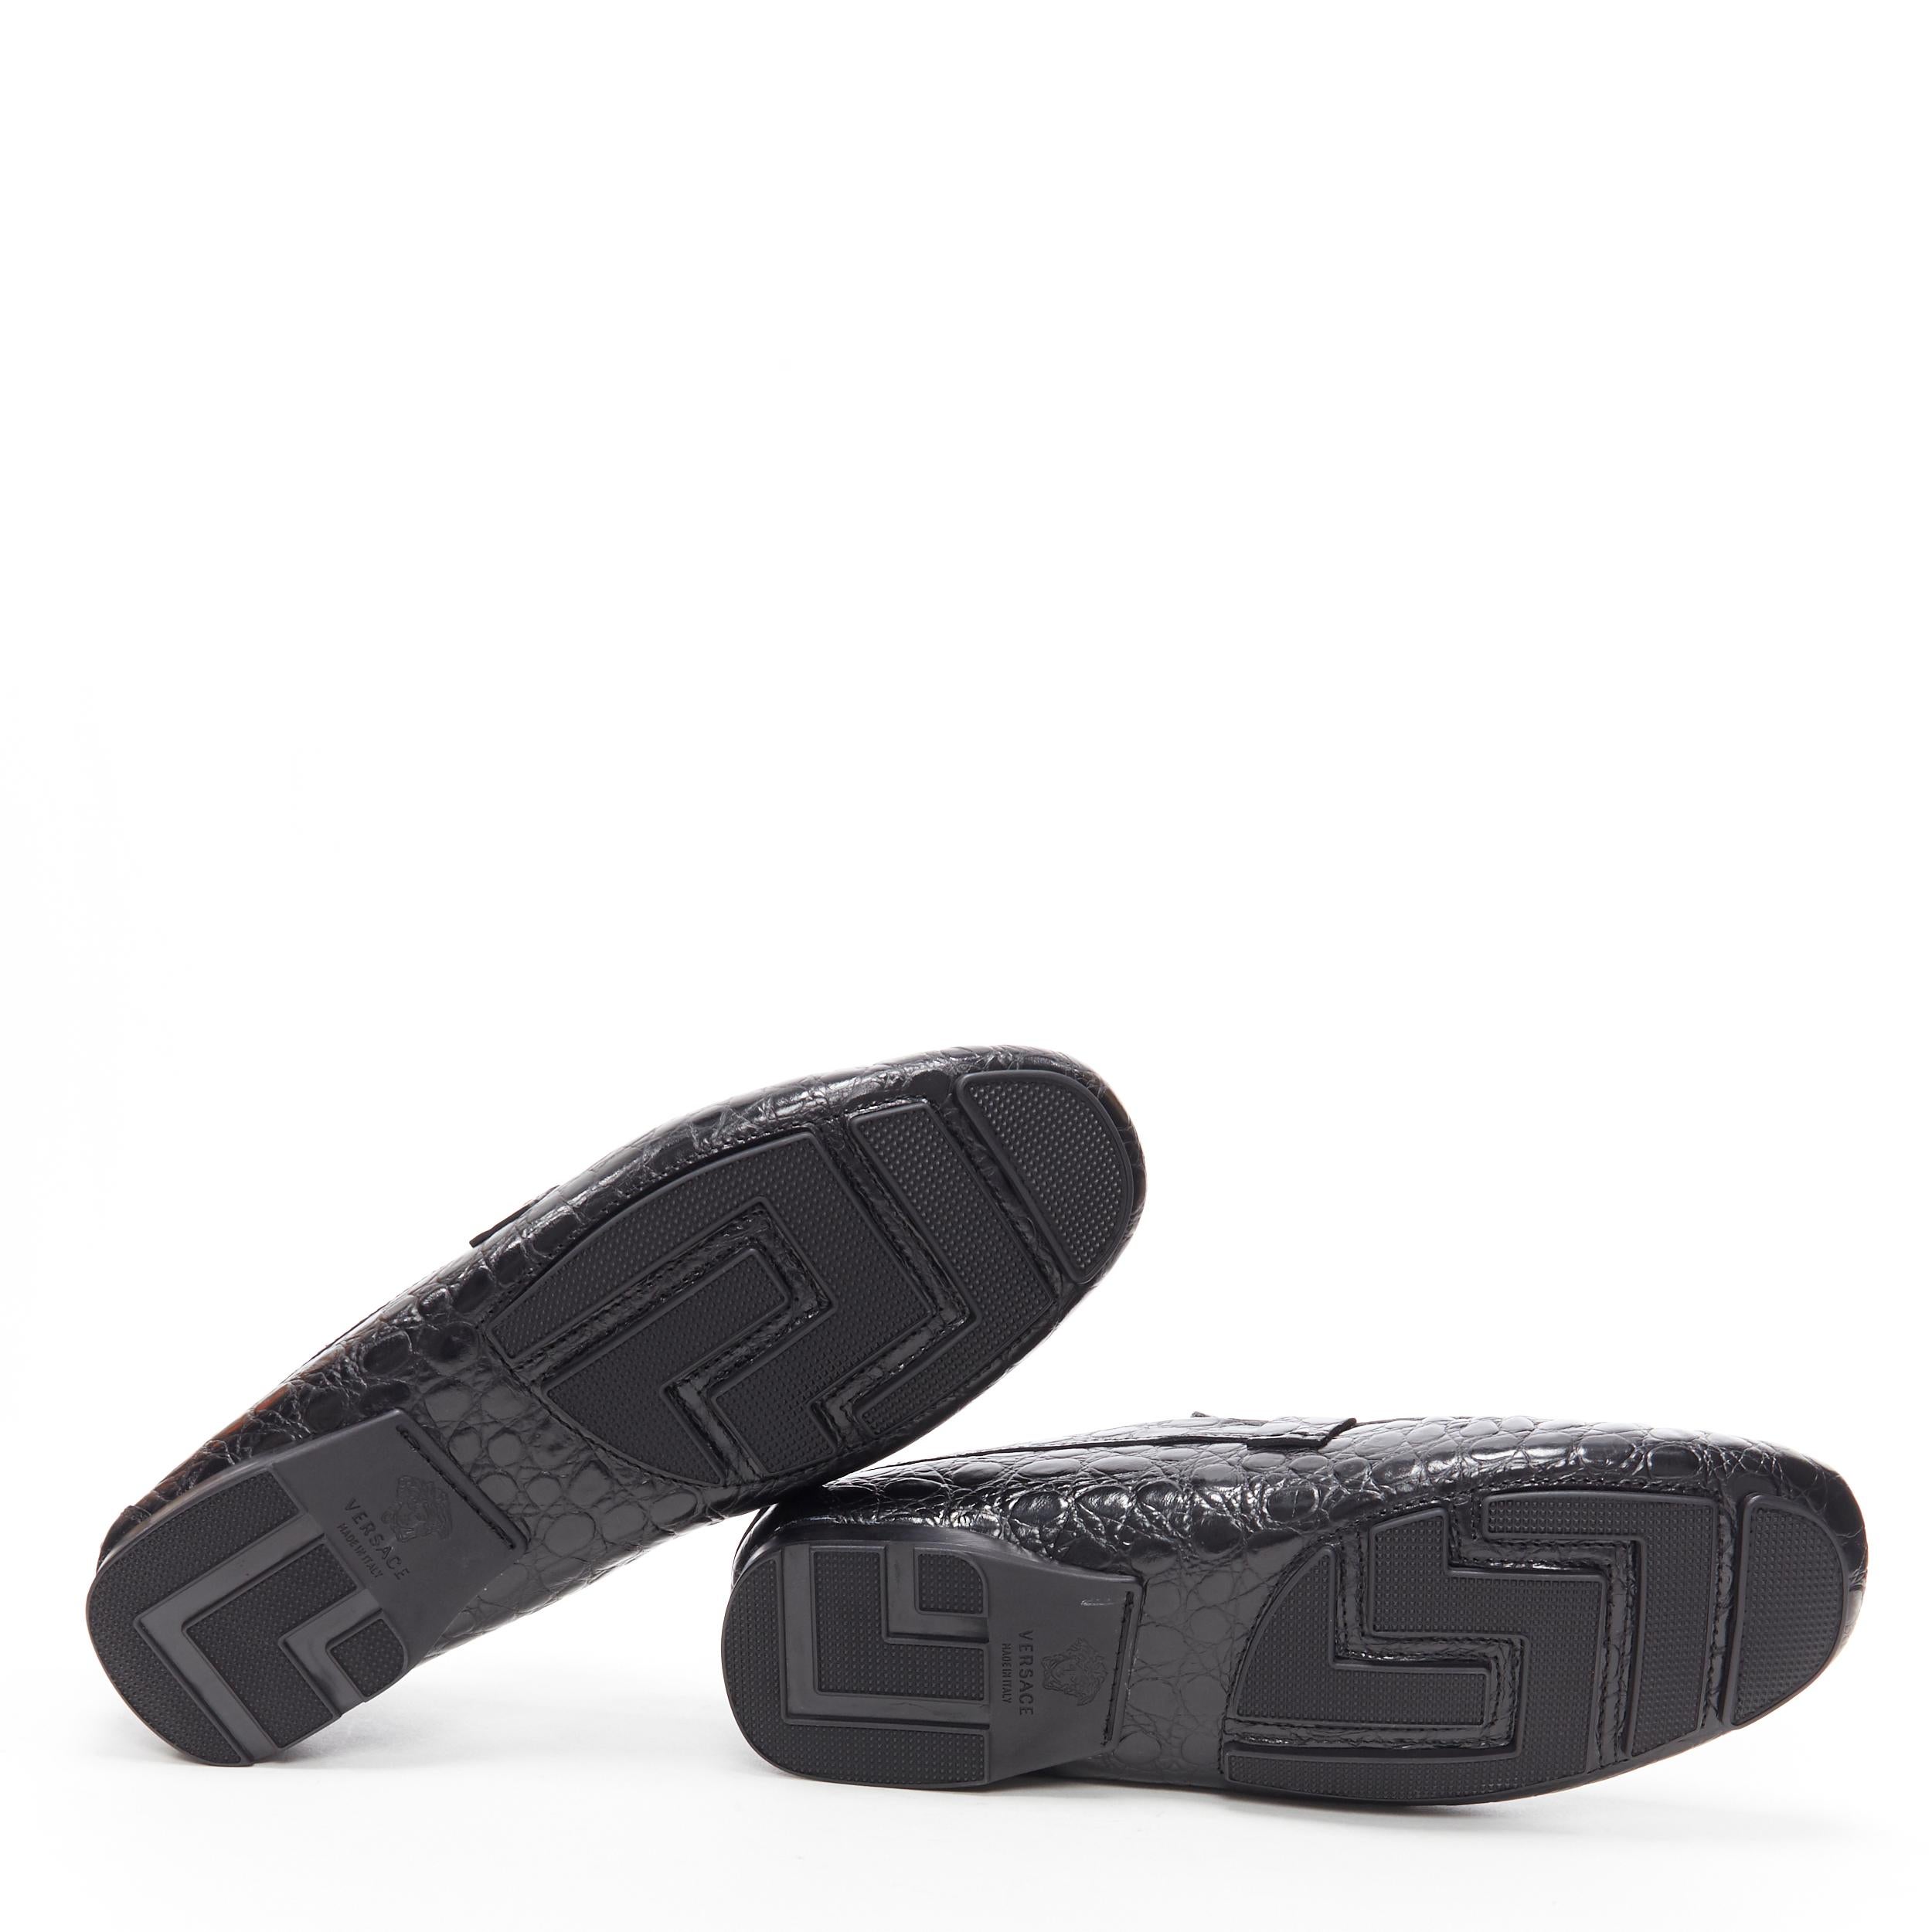 Black new VERSACE black mock croc leather silver Medusa strapped car shoe loafer EU44